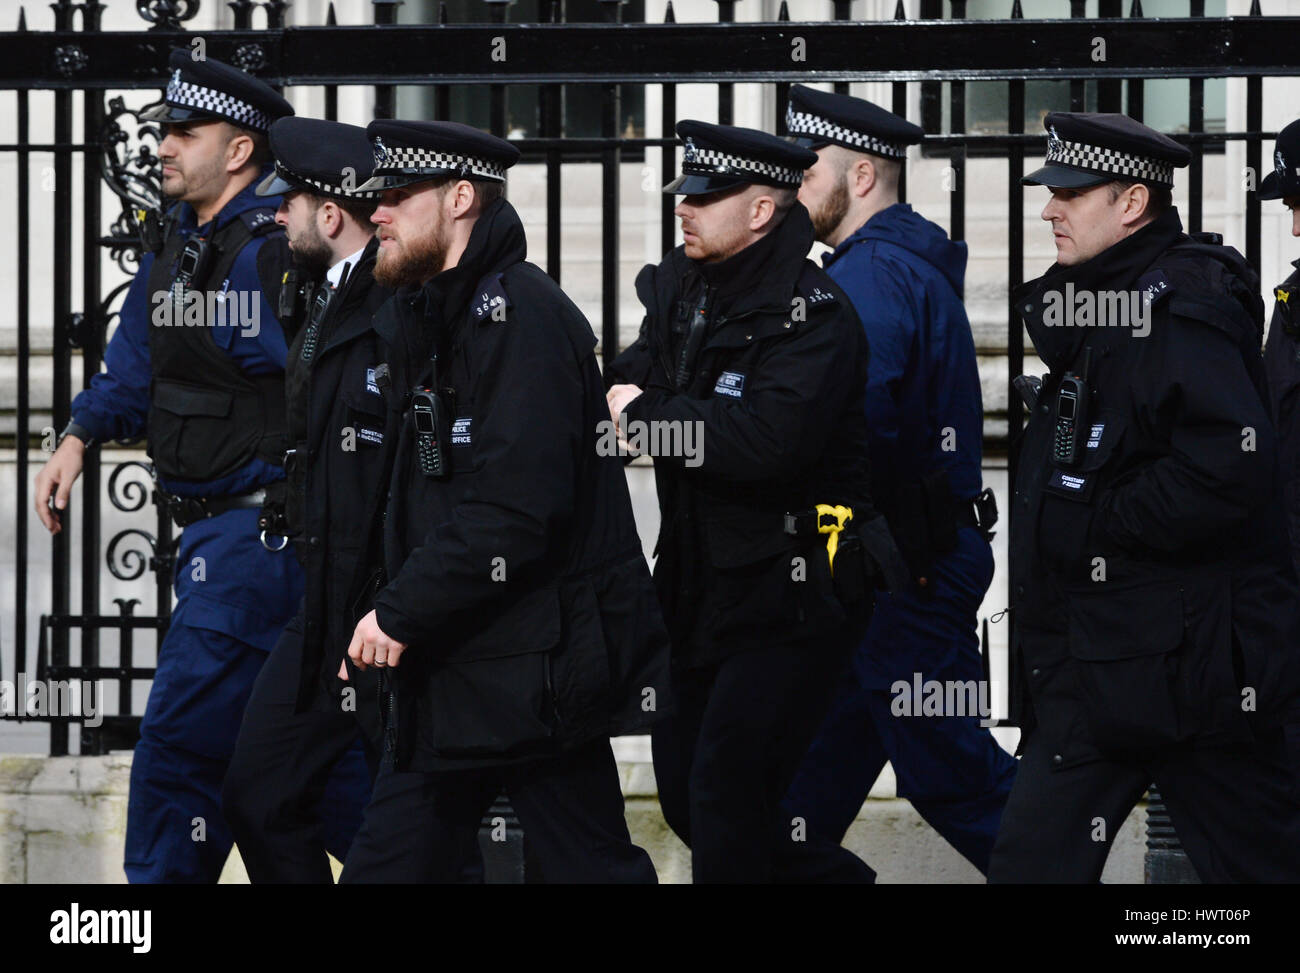 Polizei außerhalb des Palace of Westminster, London, nachdem klingt ähnlich wie Schüsse in der Nähe des Palace of Westminster gehört worden. Ein Mann mit einem Messer innerhalb der Grenzen des Palastes gesehen wurde, sagten Augenzeugen. Stockfoto